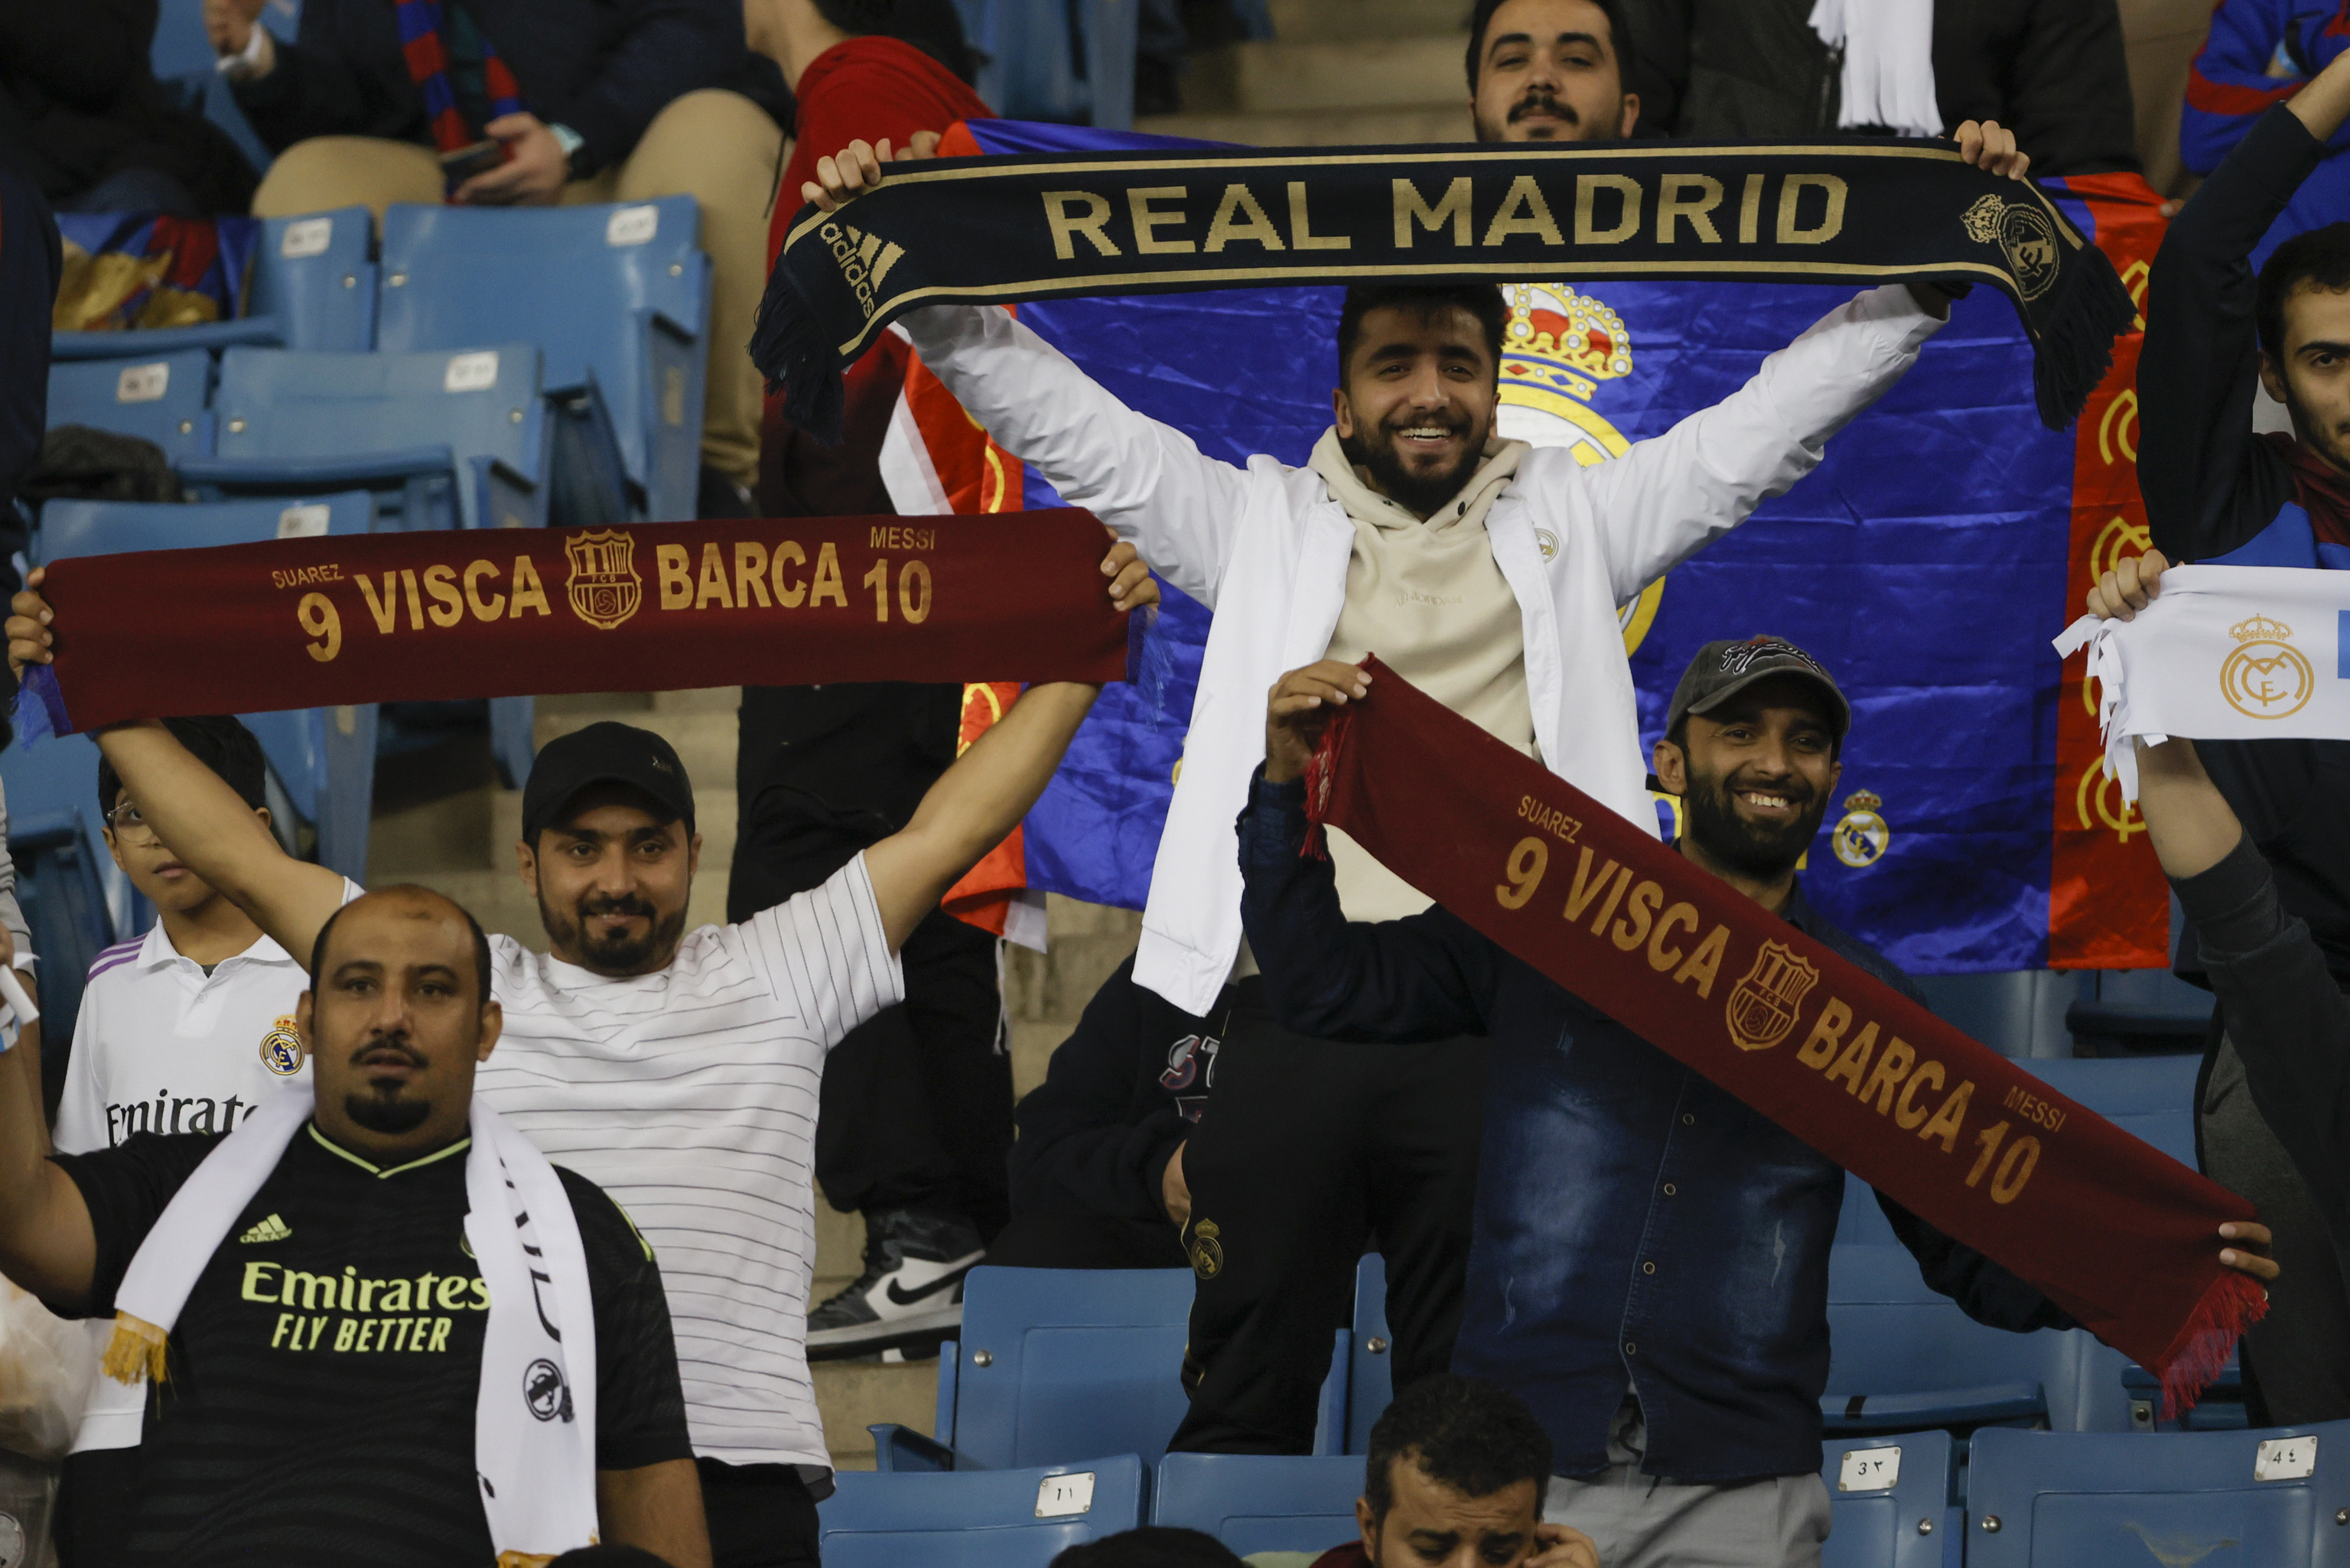 Aficionados del Real Madrid y del Barça en el stand del Rey Fahd.